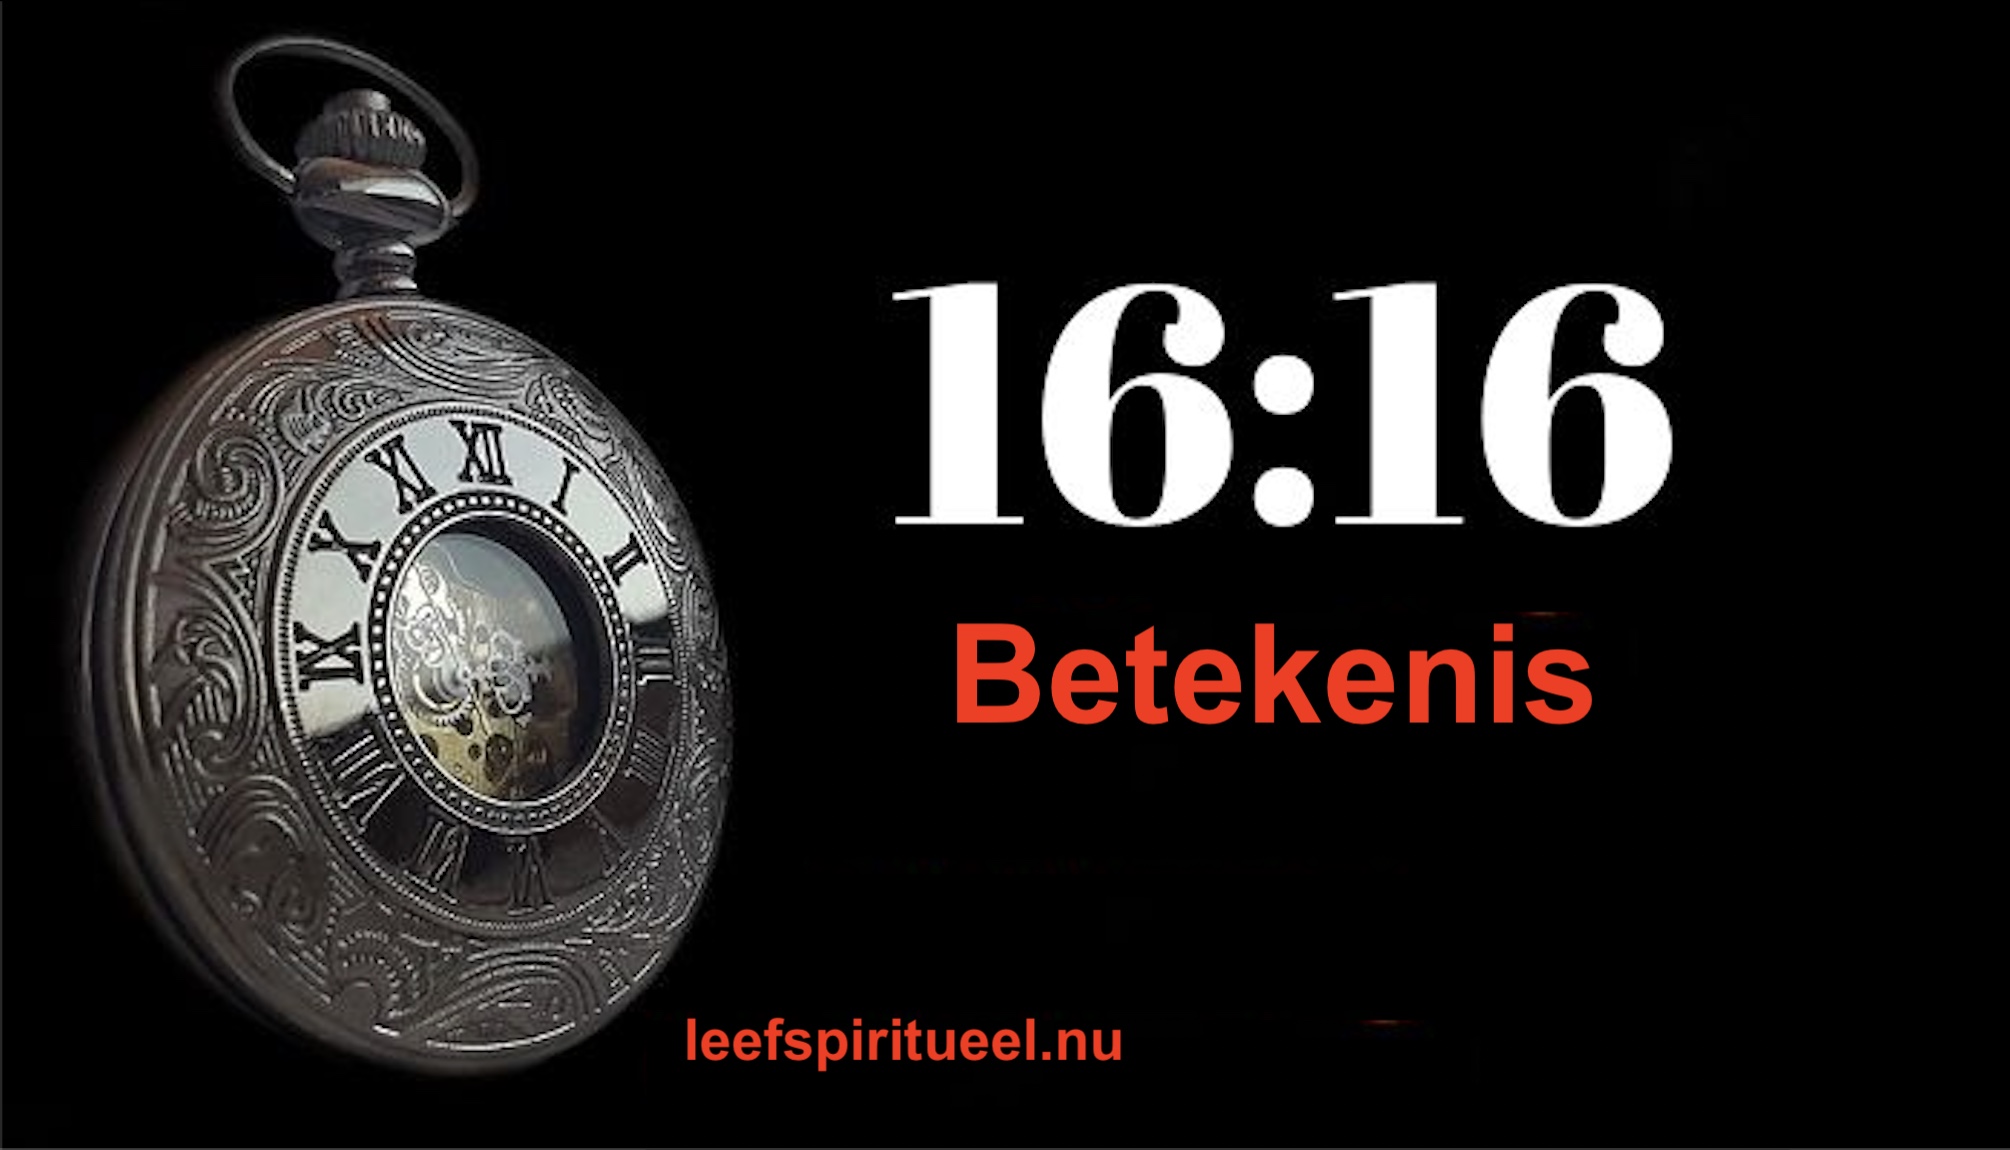 16:16 betekenis dubbel getal